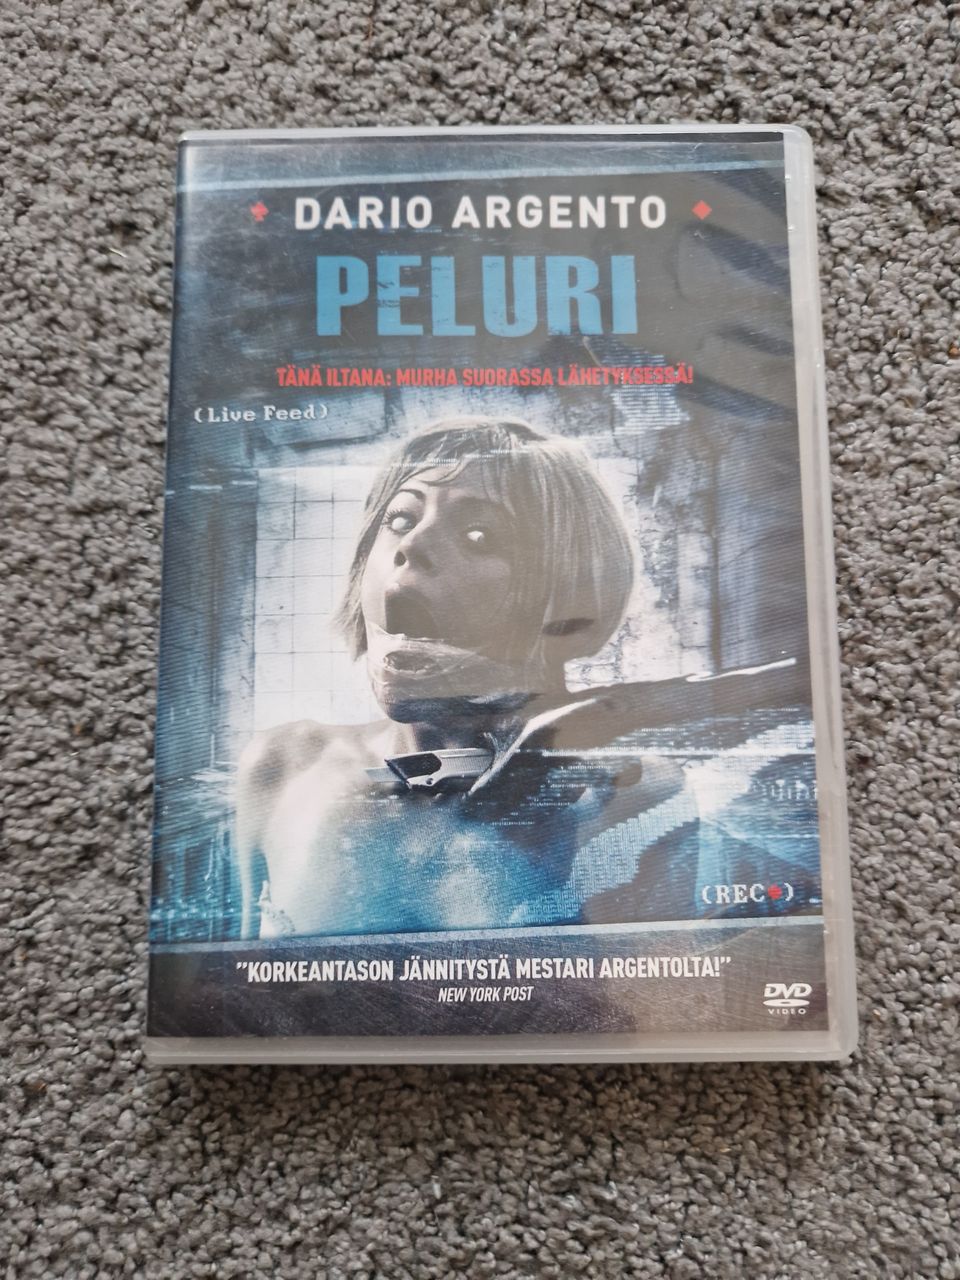 Dario Argento: Card Player - Peluri FI DVD